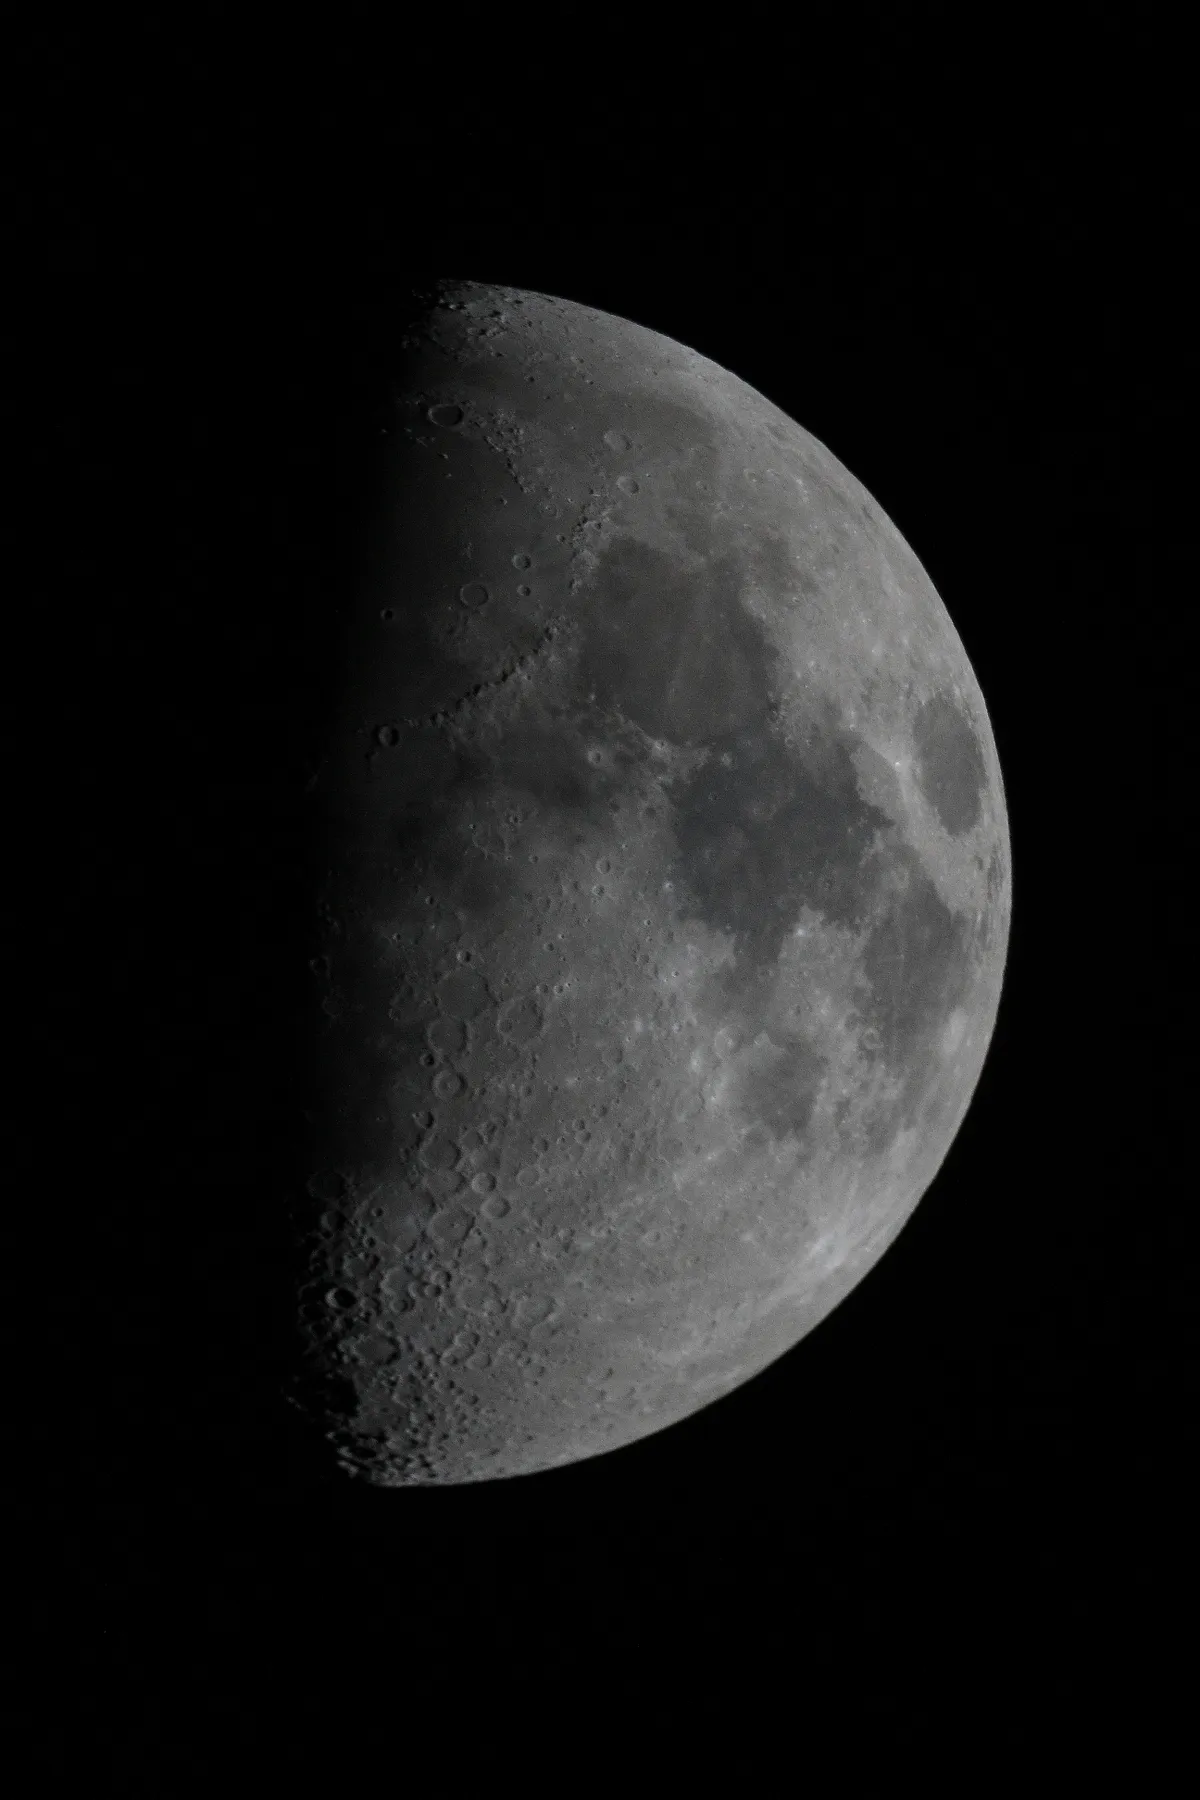 My First Moon Image by Will Arnold, Chesham, Bucks, UK. Equipment: 8